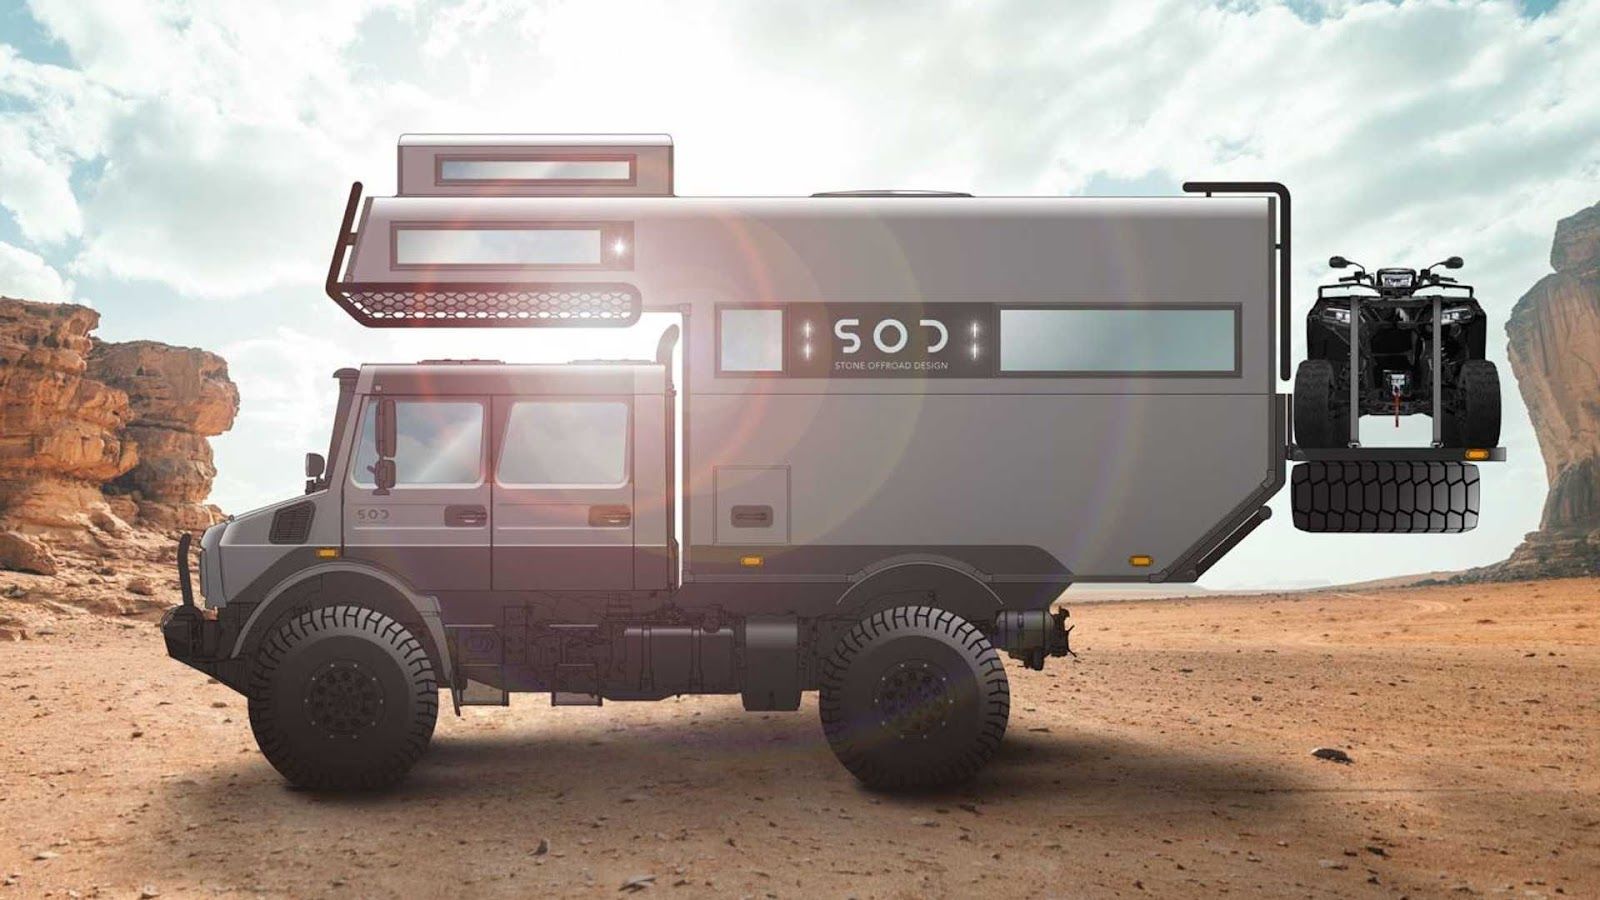 強悍越野性能搭配豪華設計內裝的 Unimog 車屋真的是完美組合